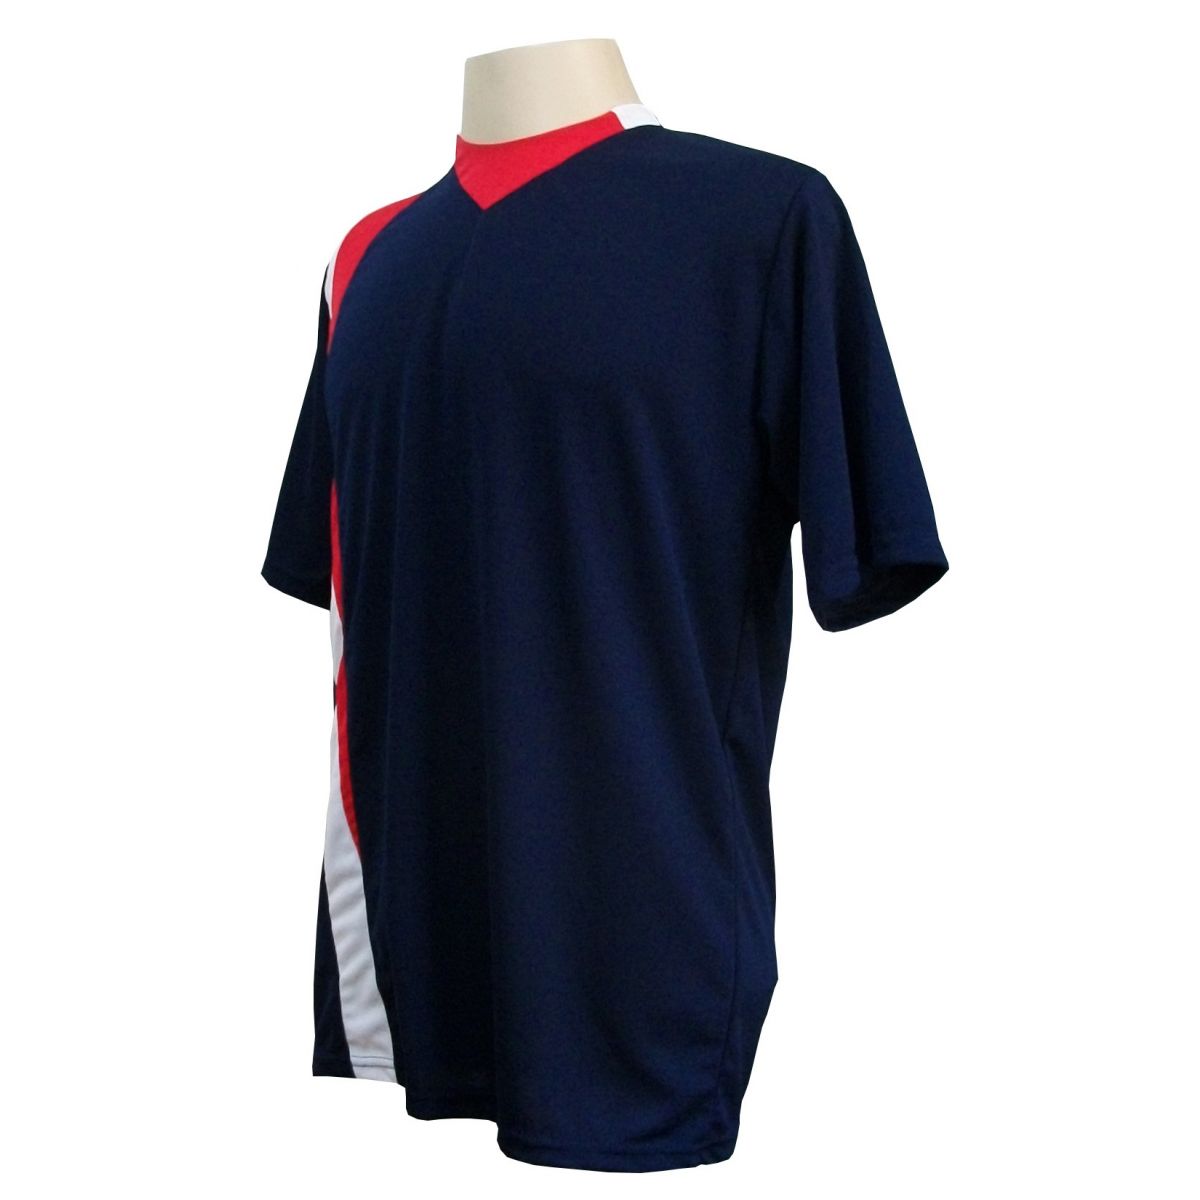 Uniforme Esportivo com 14 camisas modelo PSG Marinho/Vermelho/Branco + 14 calções modelo Madrid + 1 Goleiro + Brindes